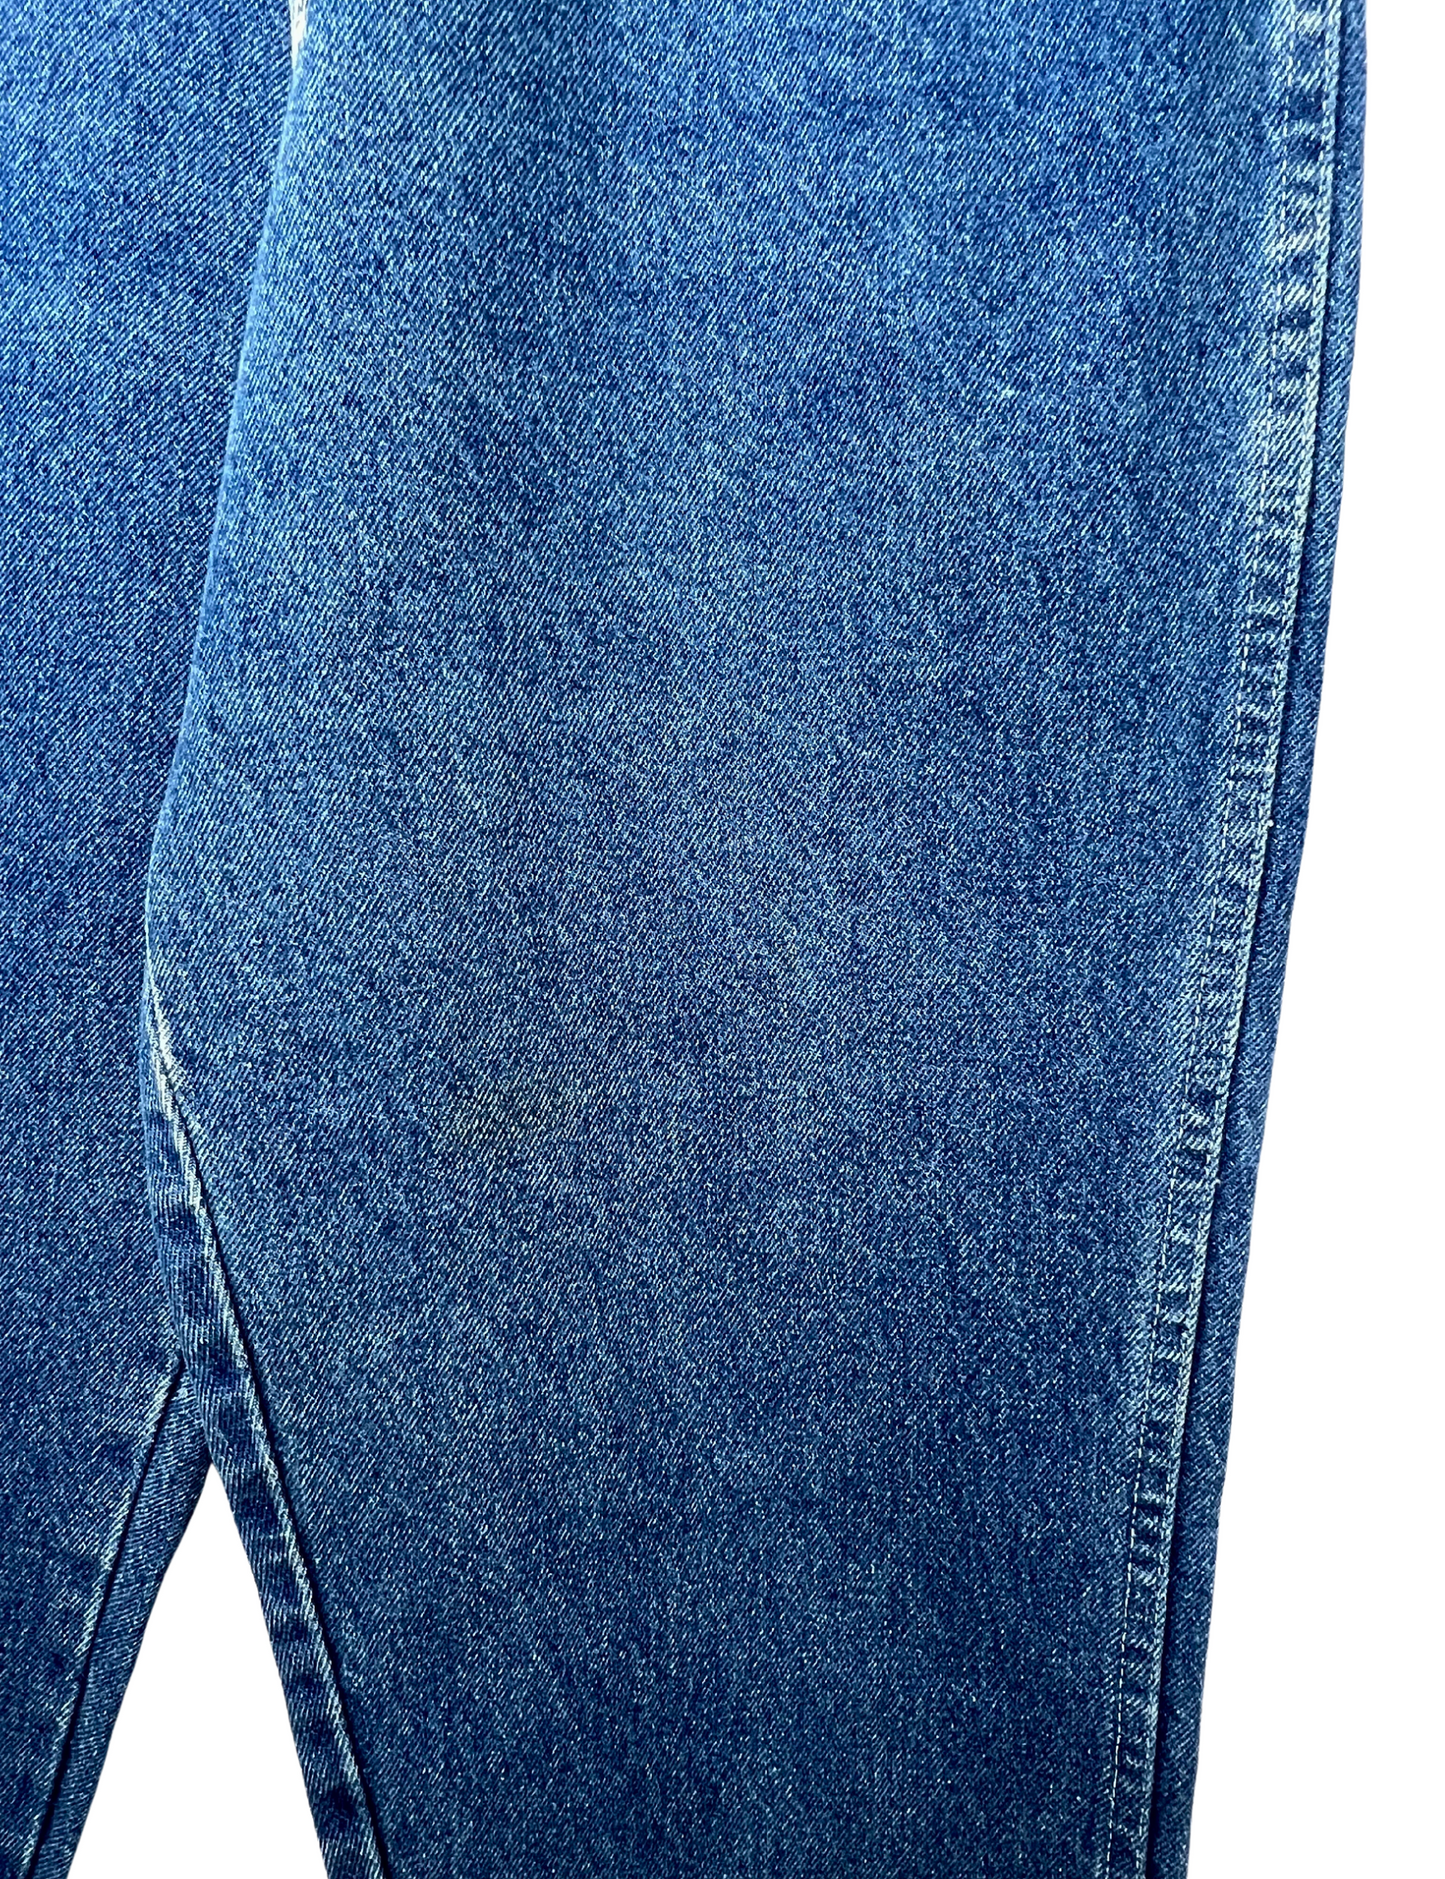 70's Wrangler Stitched Back Pocket WESTERN Jeans Sz 28W